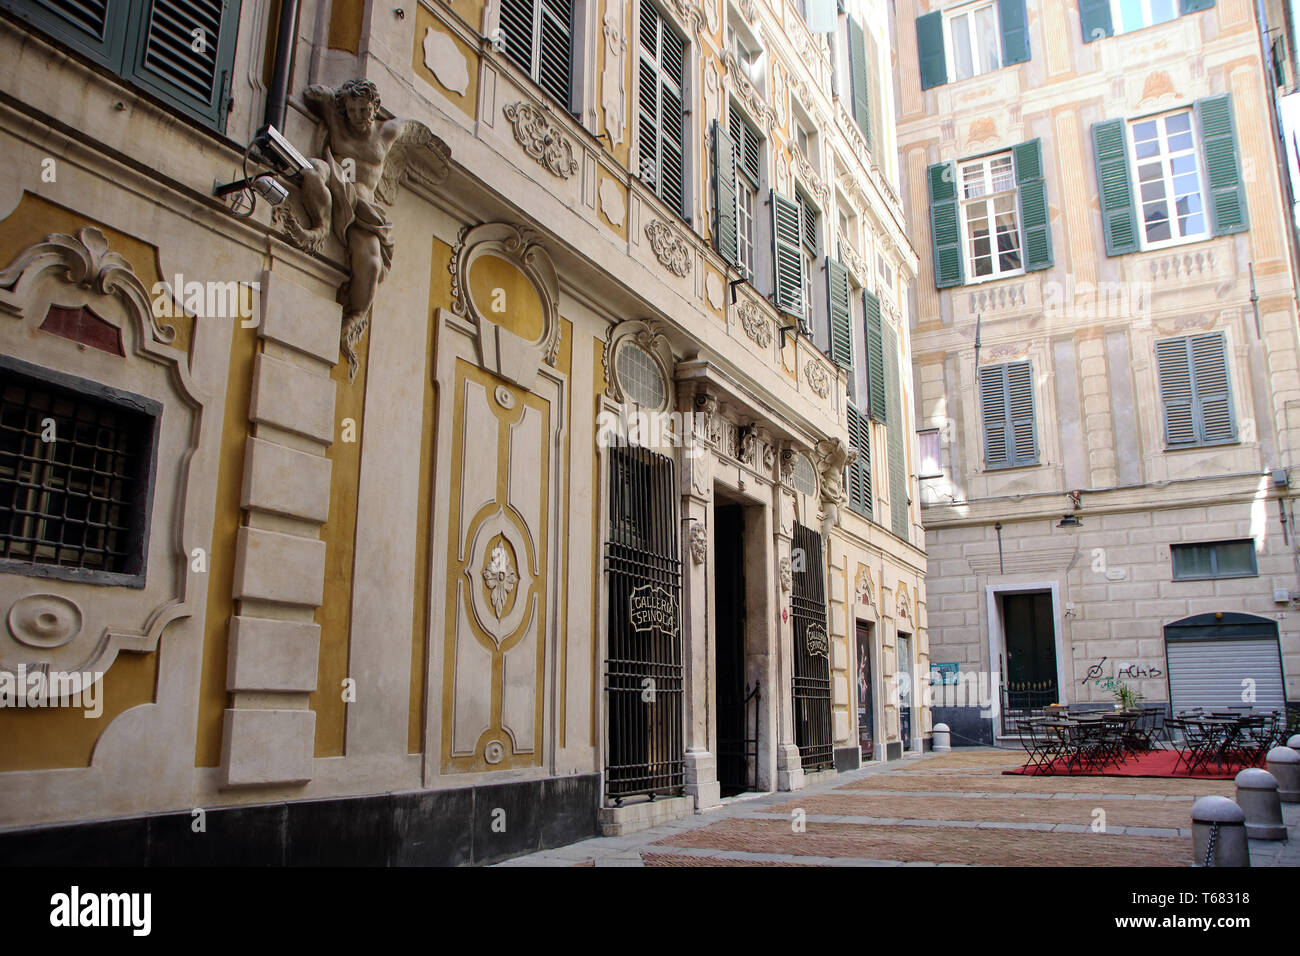 At Genoa, Italy, On 04/01/2018 -The facade of Spinola  Palace in Genoa, Italy Stock Photo